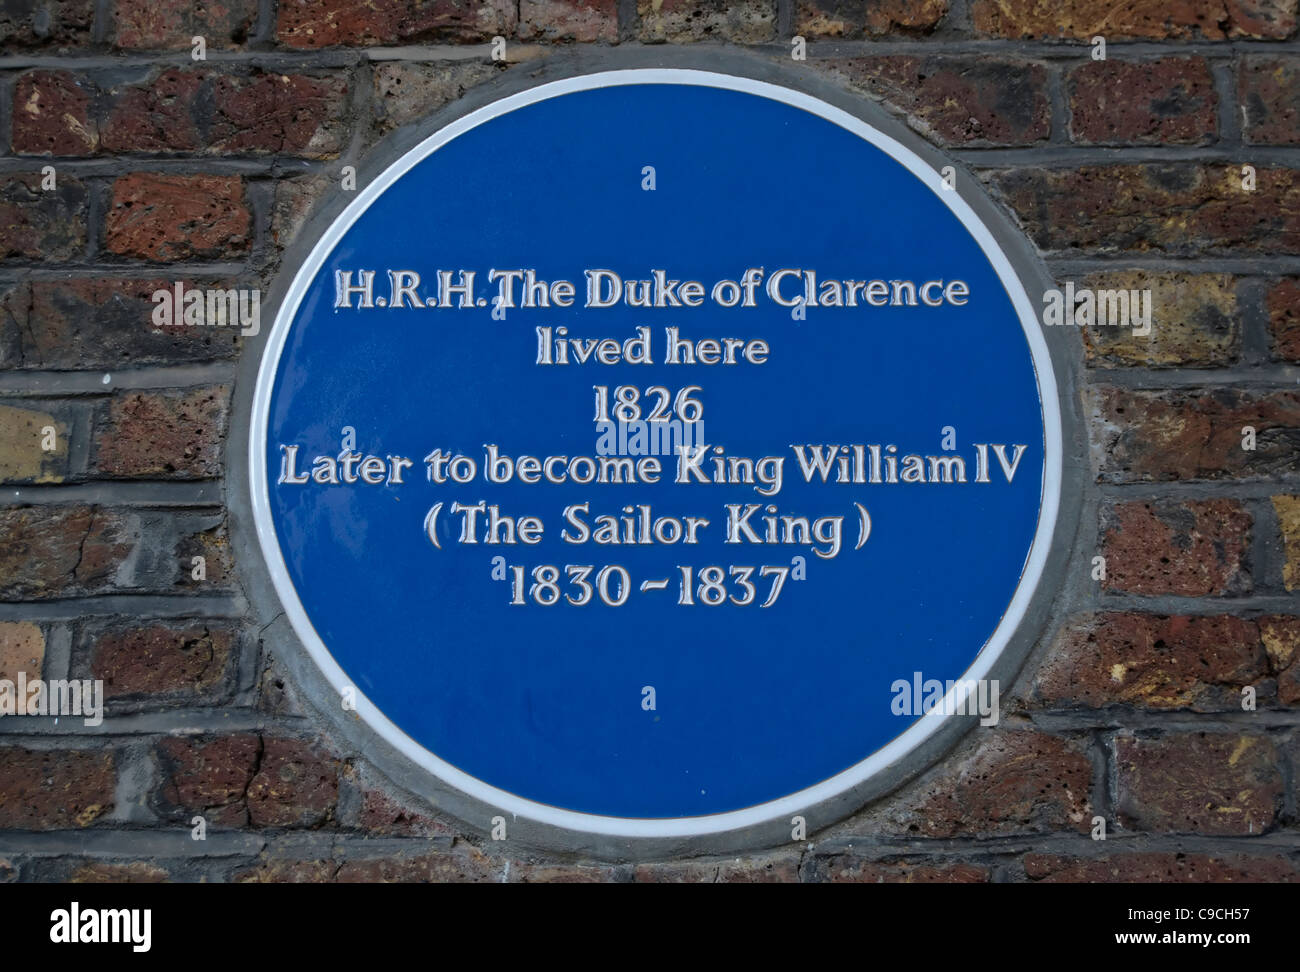 Le marquage d'une plaque bleue 1826 accueil du duc de Clarence, futur roi William IV, Charles Street, Mayfair, londoin, Angleterre Banque D'Images